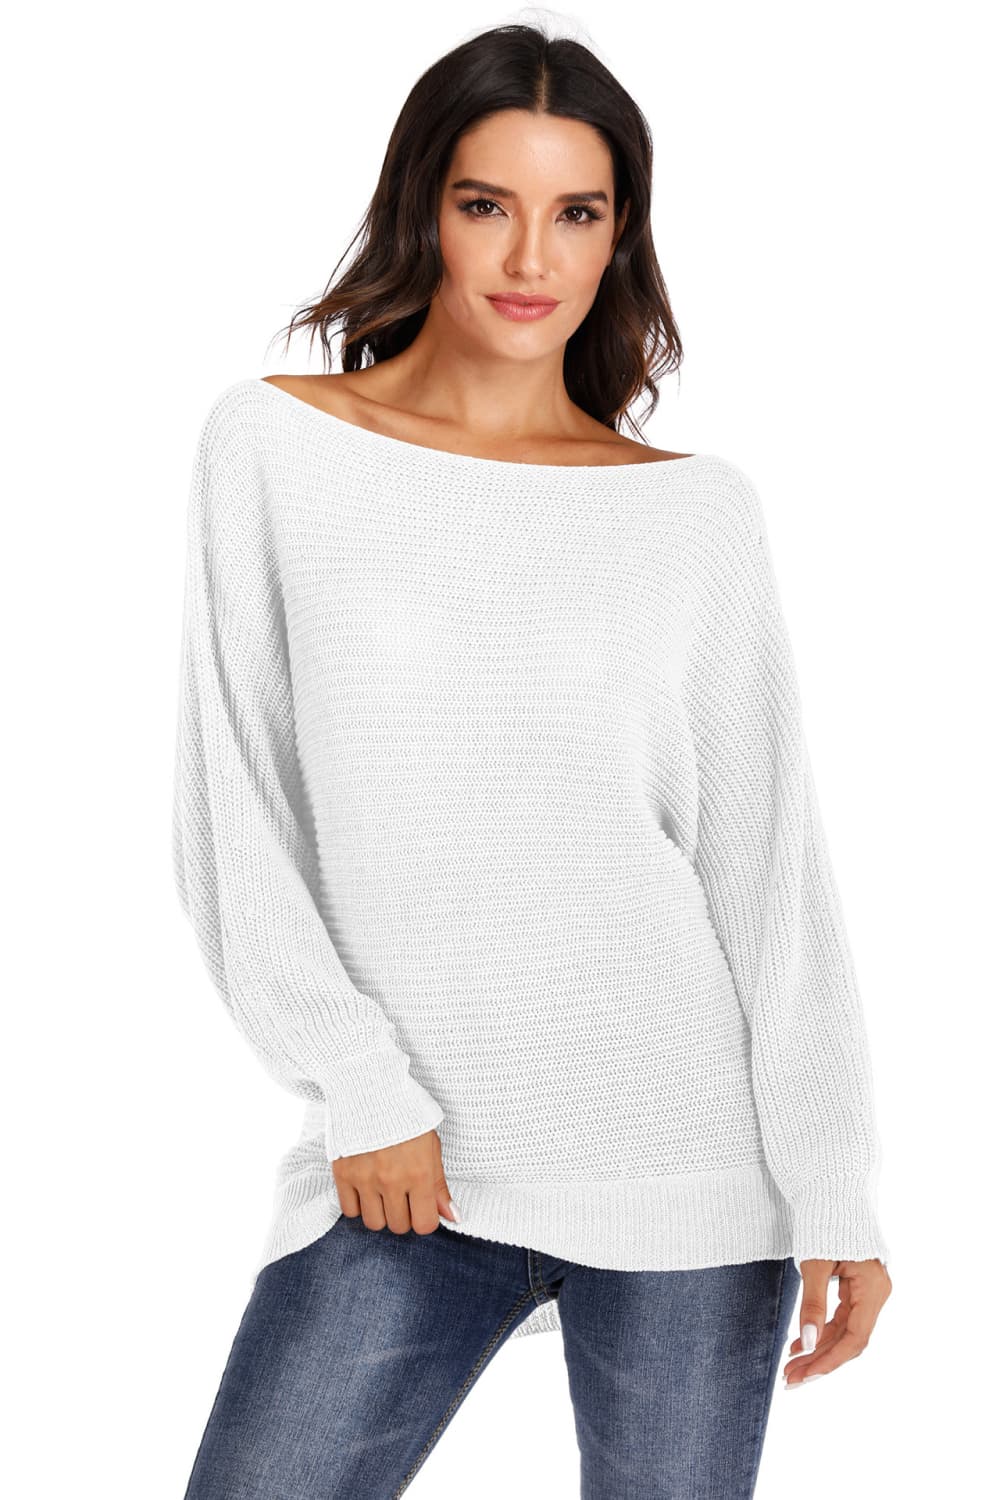 Women’s One Shoulder Dolman Sleeve Sweater